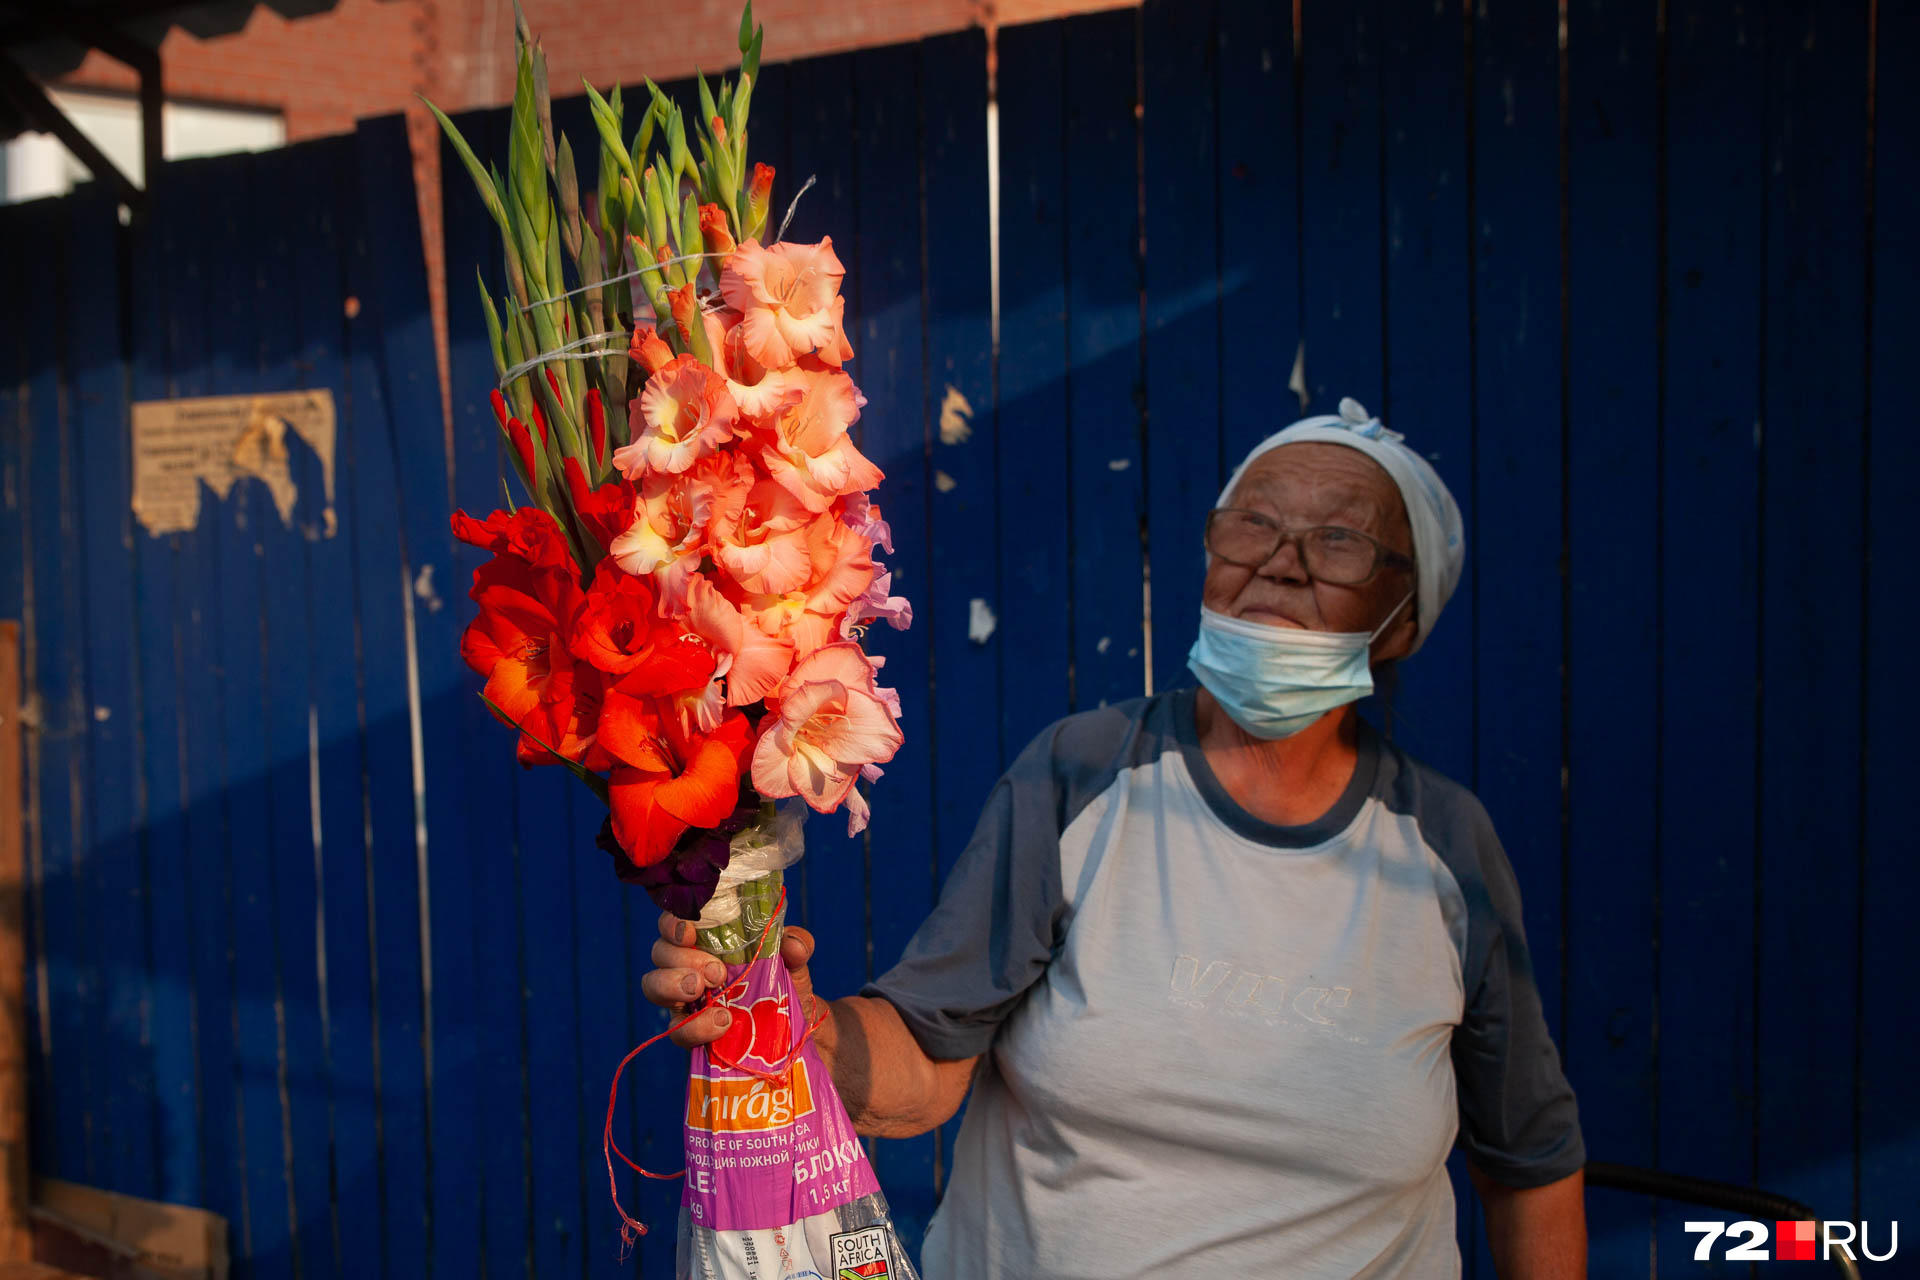 Садовые цветы продают бабушки в Тюмени, где купить красивый букет на 1Сентября в Тюмени, где купить букет в Тюмени, Гладиолусы, астры, гортензии— какие цветы есть в Тюмени, - 27 августа 2021 - 72.ru